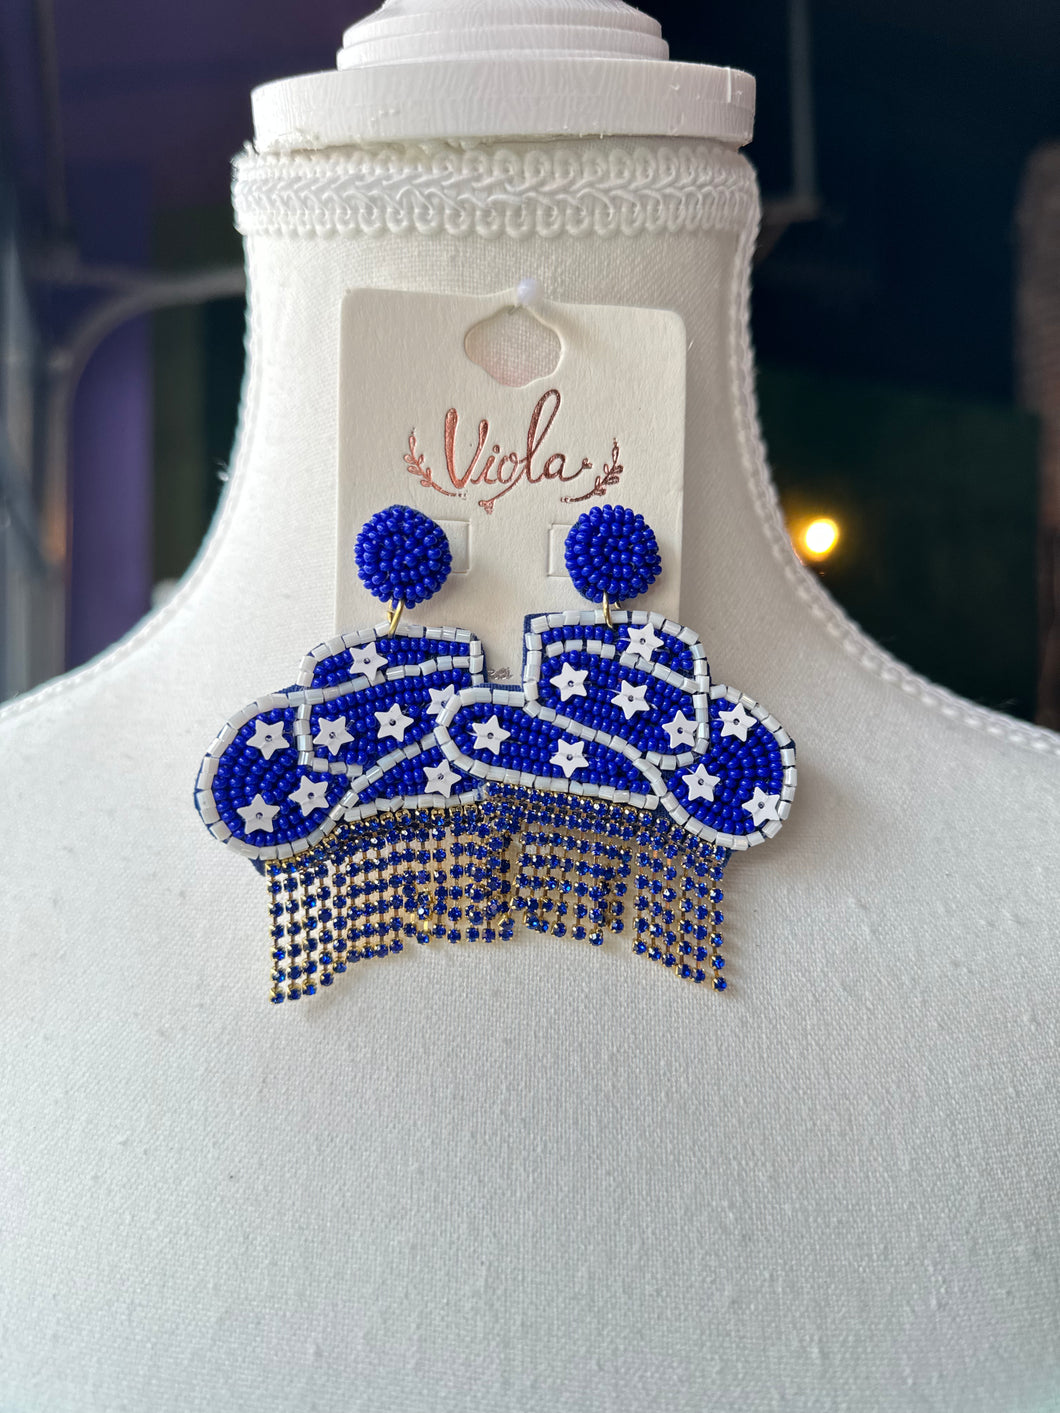 Blue Cowgirl Hat earrings w/ tassels